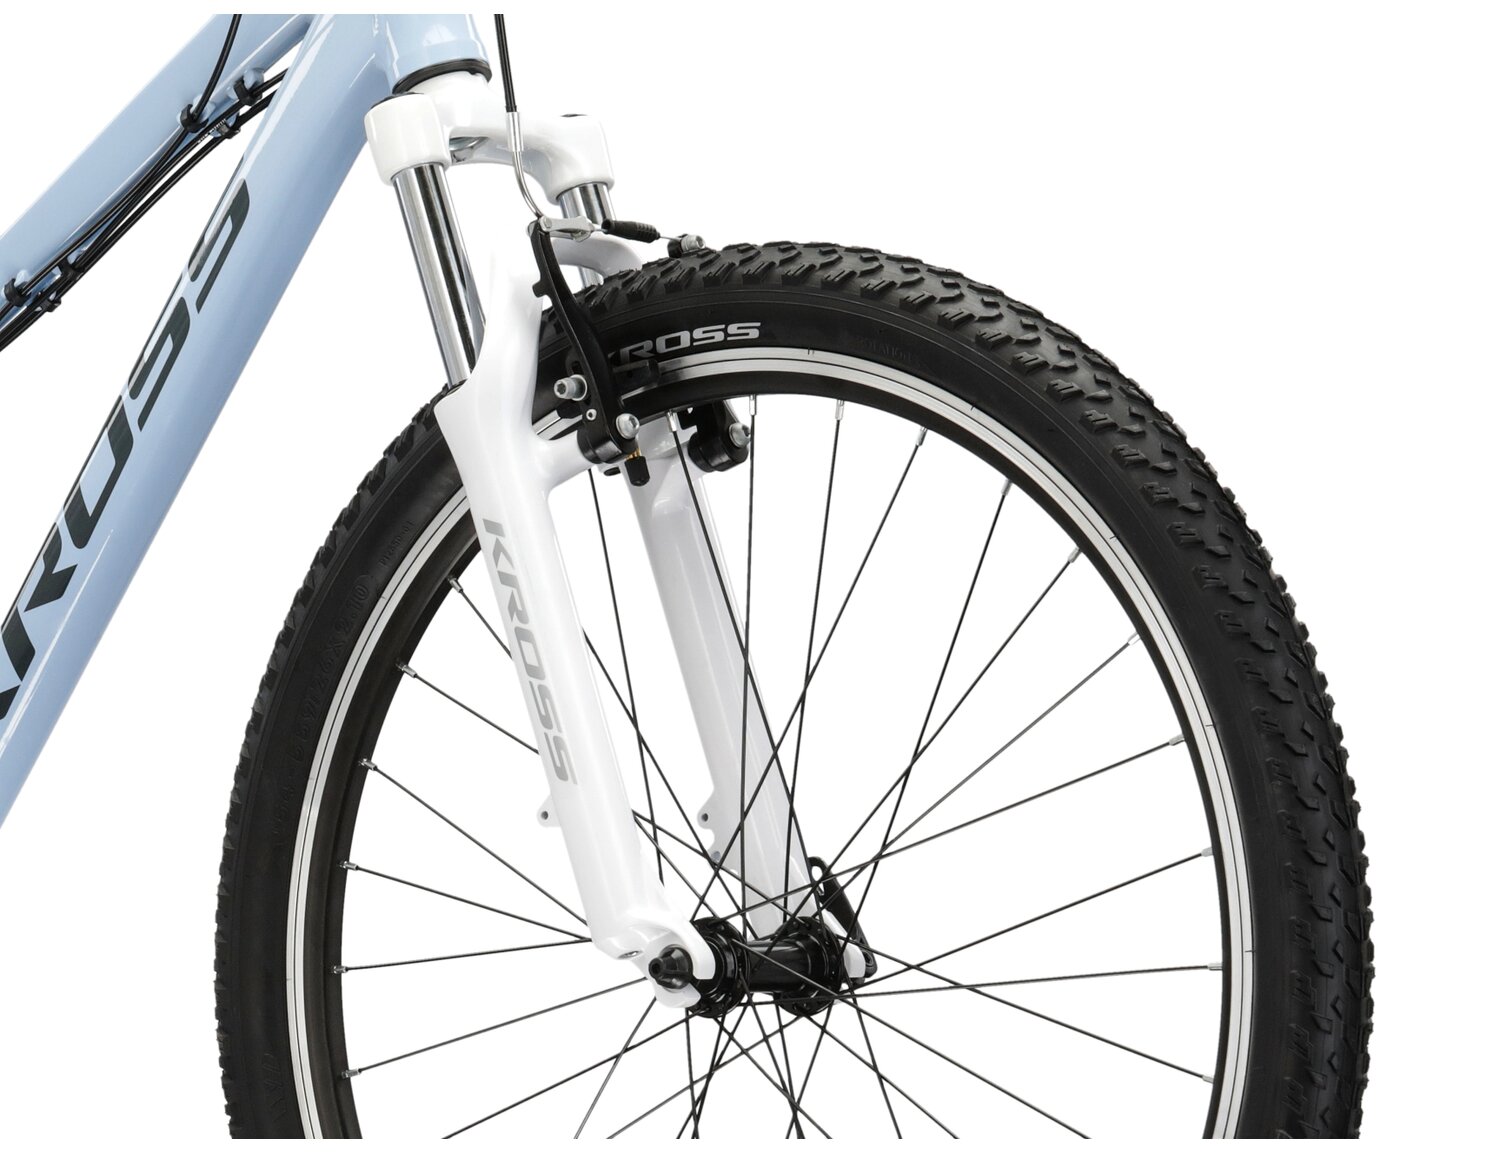  Aluminowa rama, amortyzowany widelec Zoom Forgo 565 o skoku 80mm oraz opony o szerokości 2,1 cala w damskim rowerze górskim MTB Woman KROSS Lea 1.0